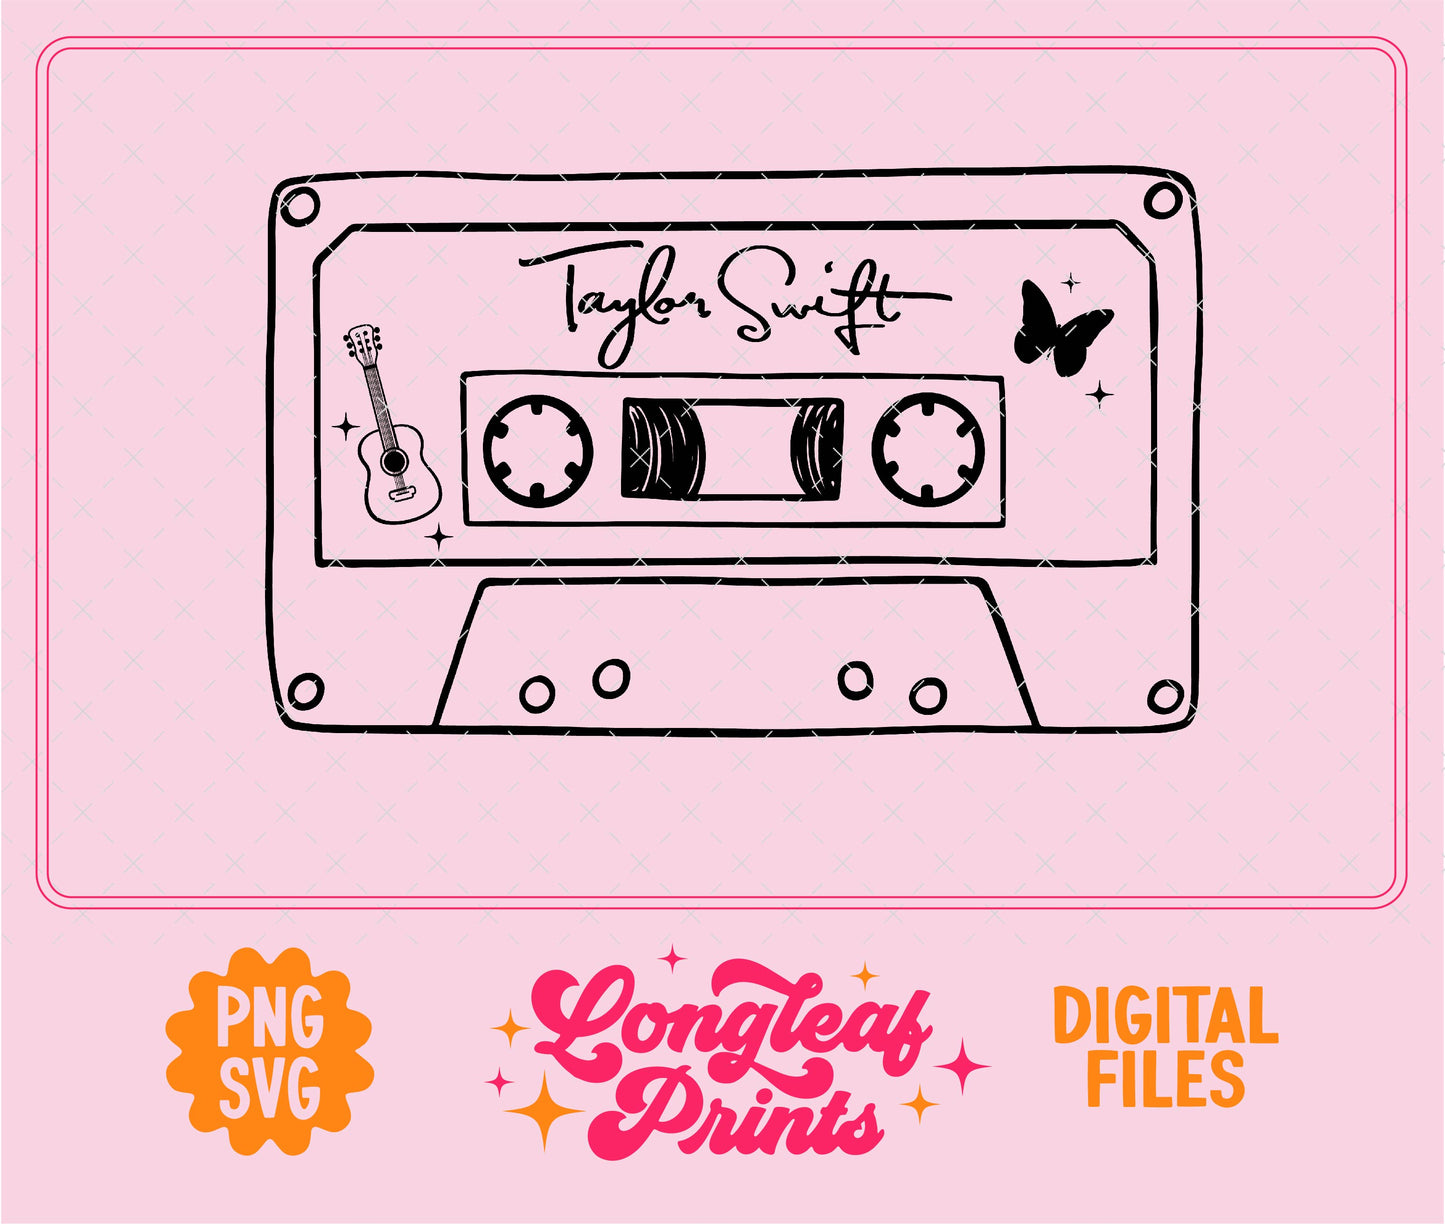 Taylor Swift Debut Mixtape SVG Digital Download Design File